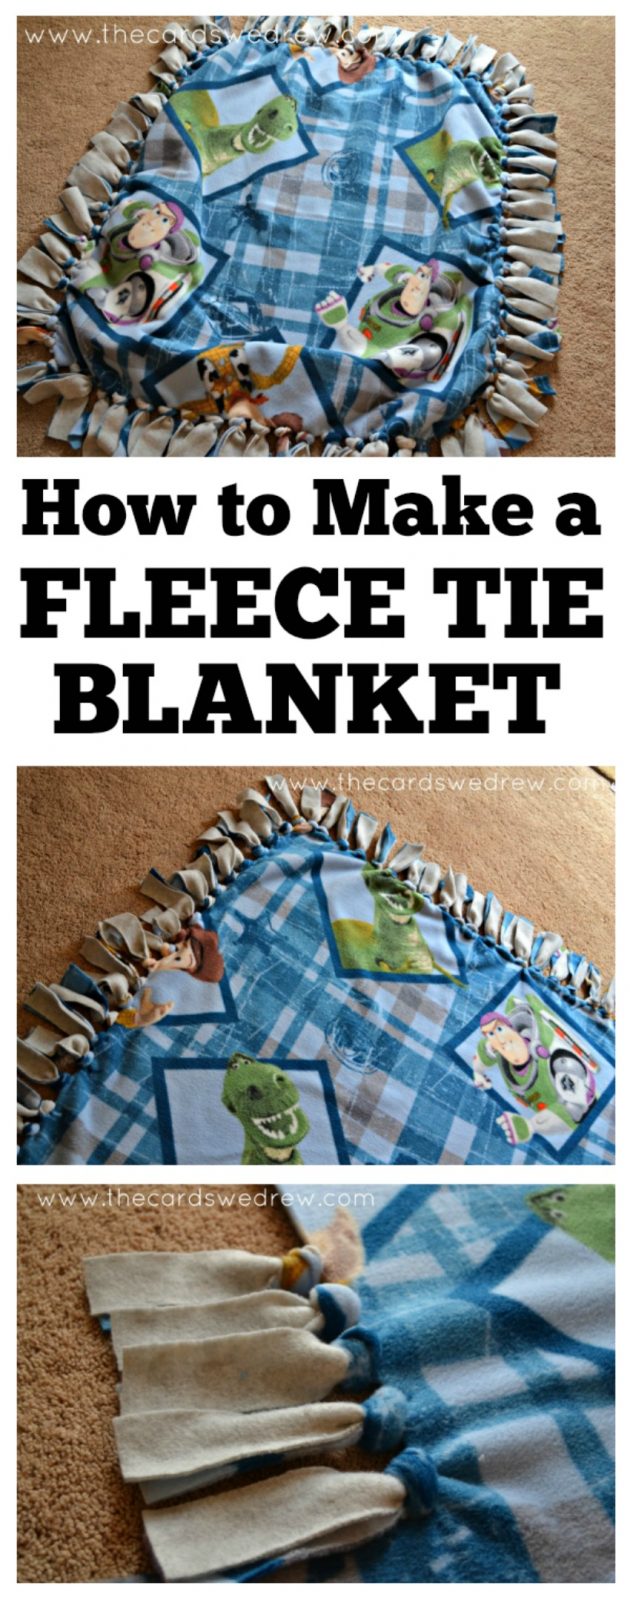 how to make a fleece tie blanket